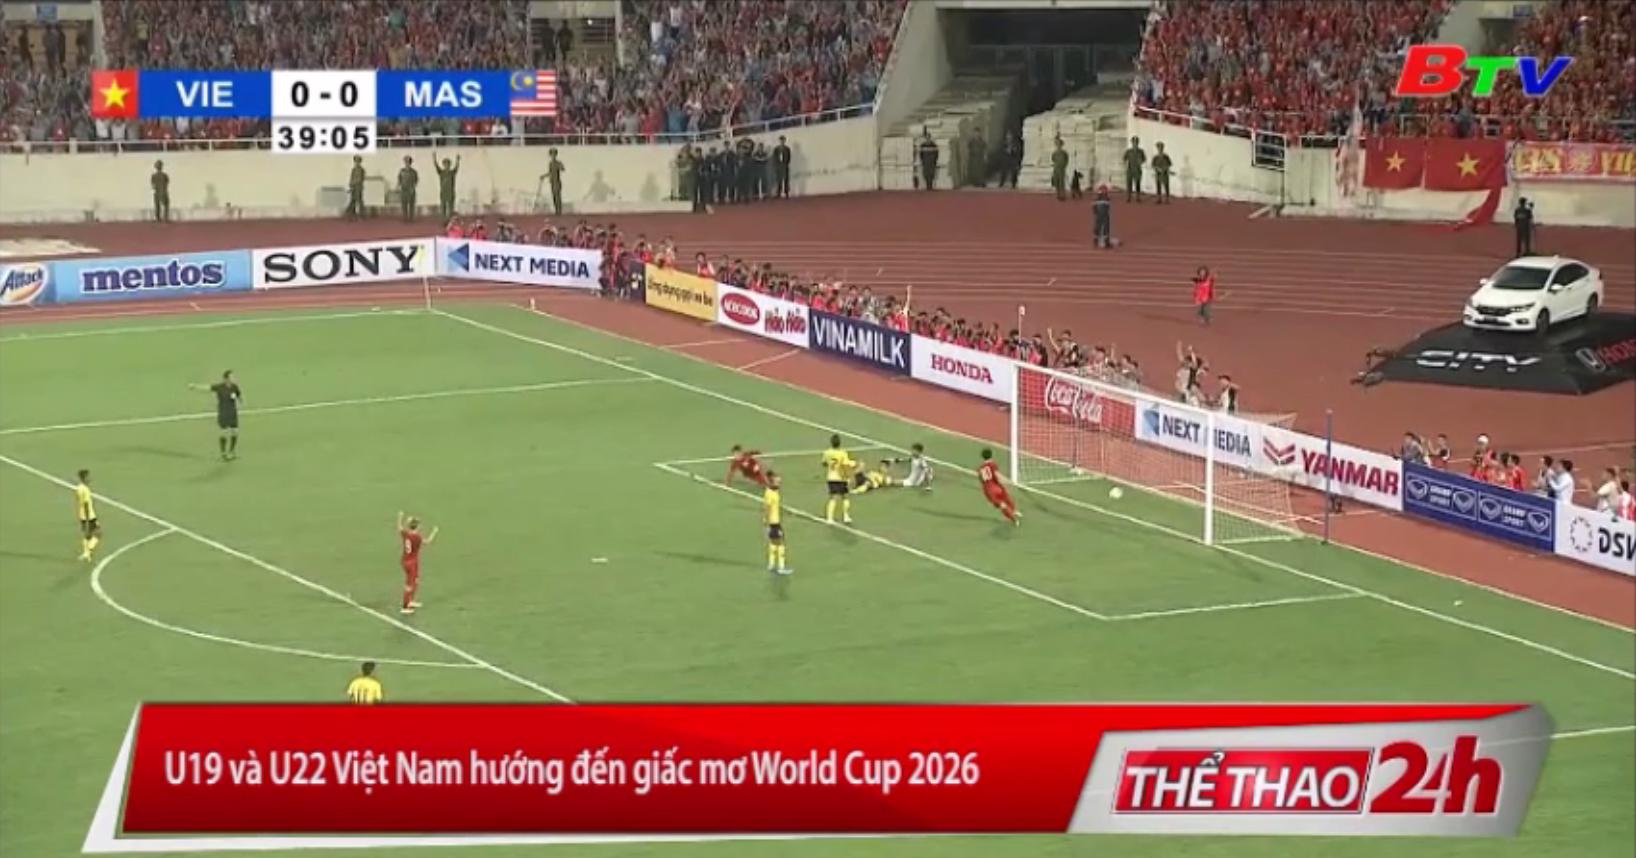 U19 và U22 Việt Nam hướng đến giấc mơ World Cup 2026